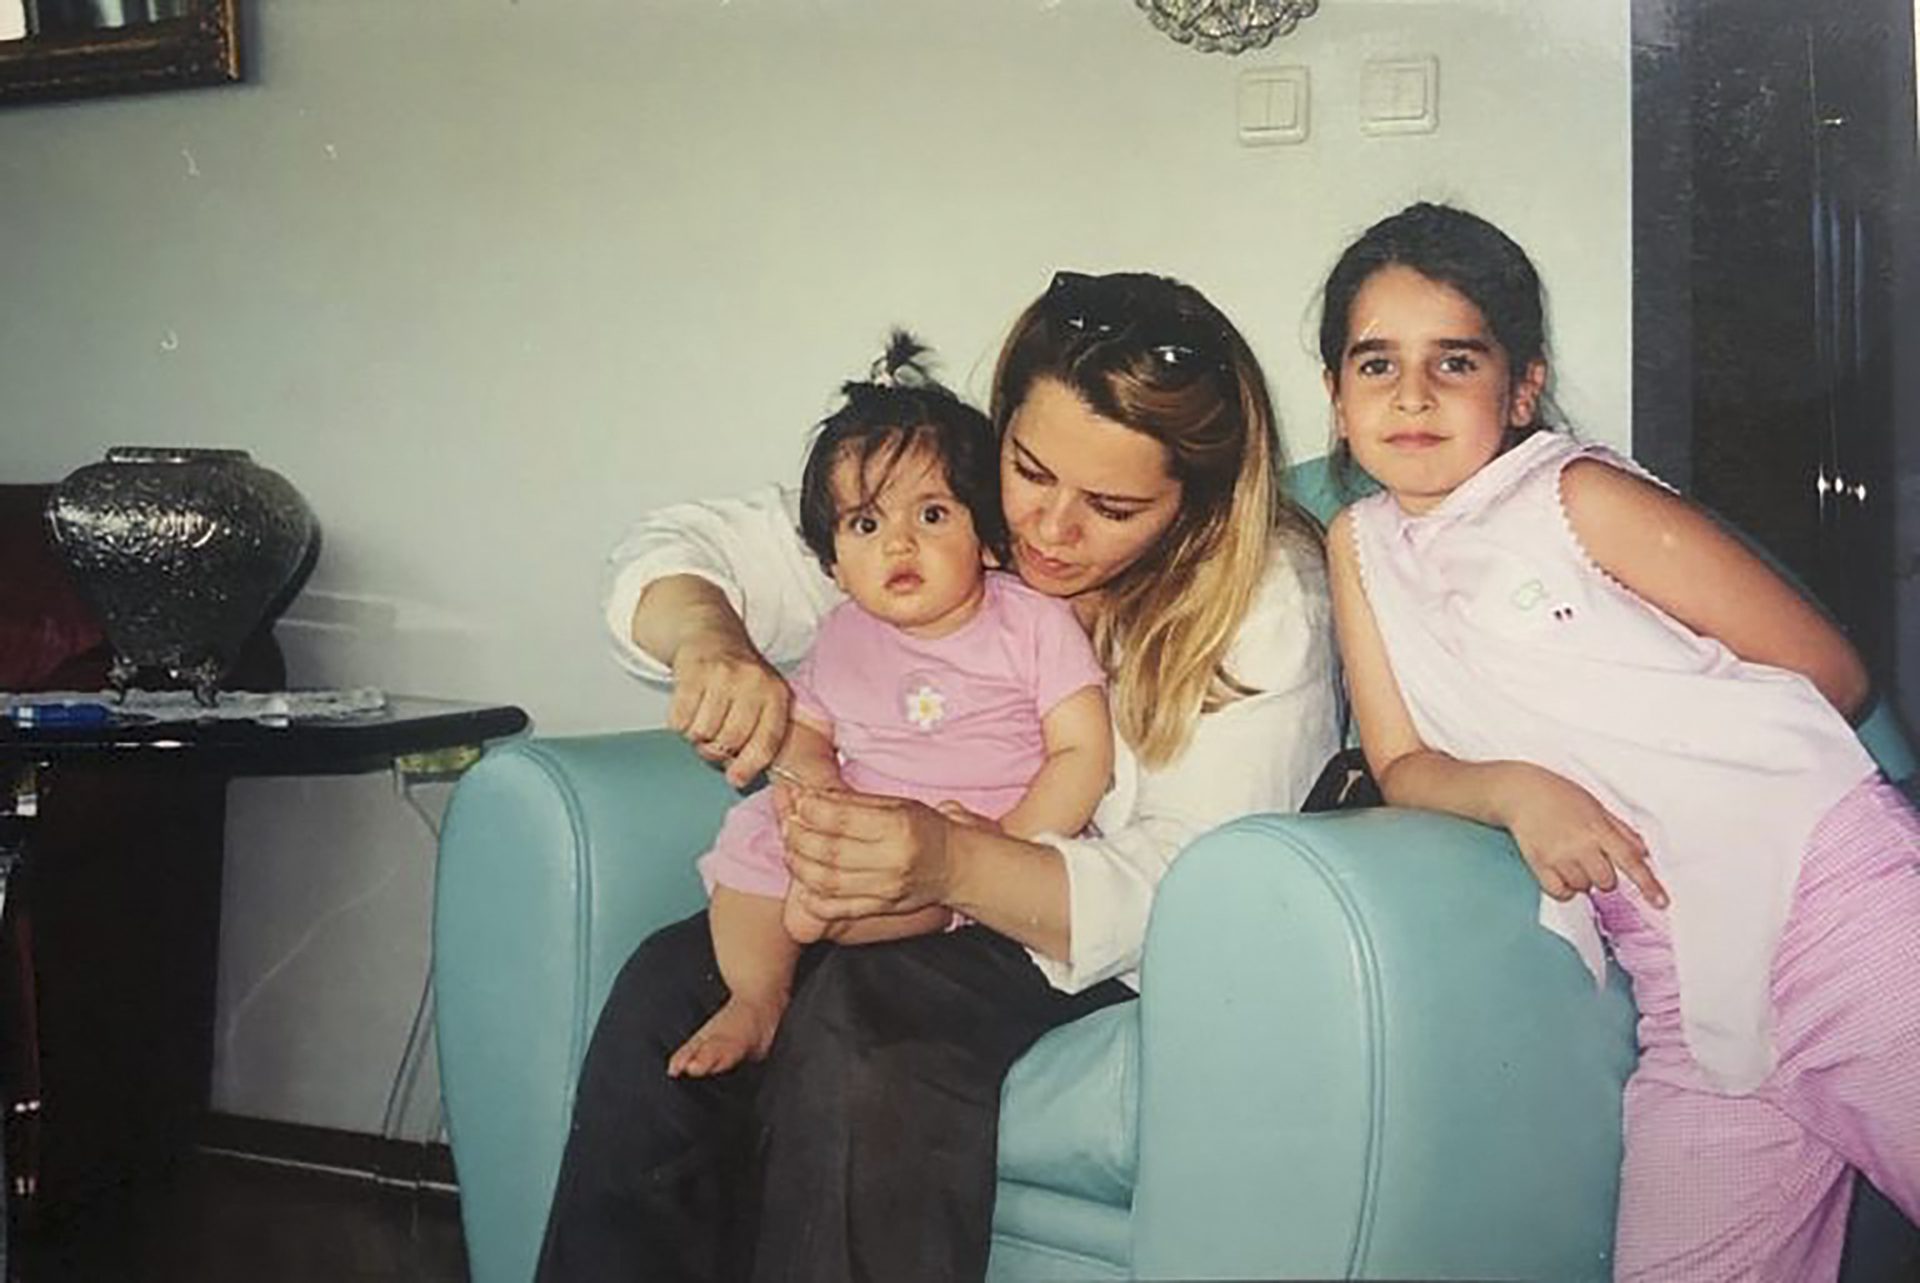 Piril de niña con su madre y su prima junto a una silla azul mientras su madre le corta las uñas de los pies a su prima pequeña.